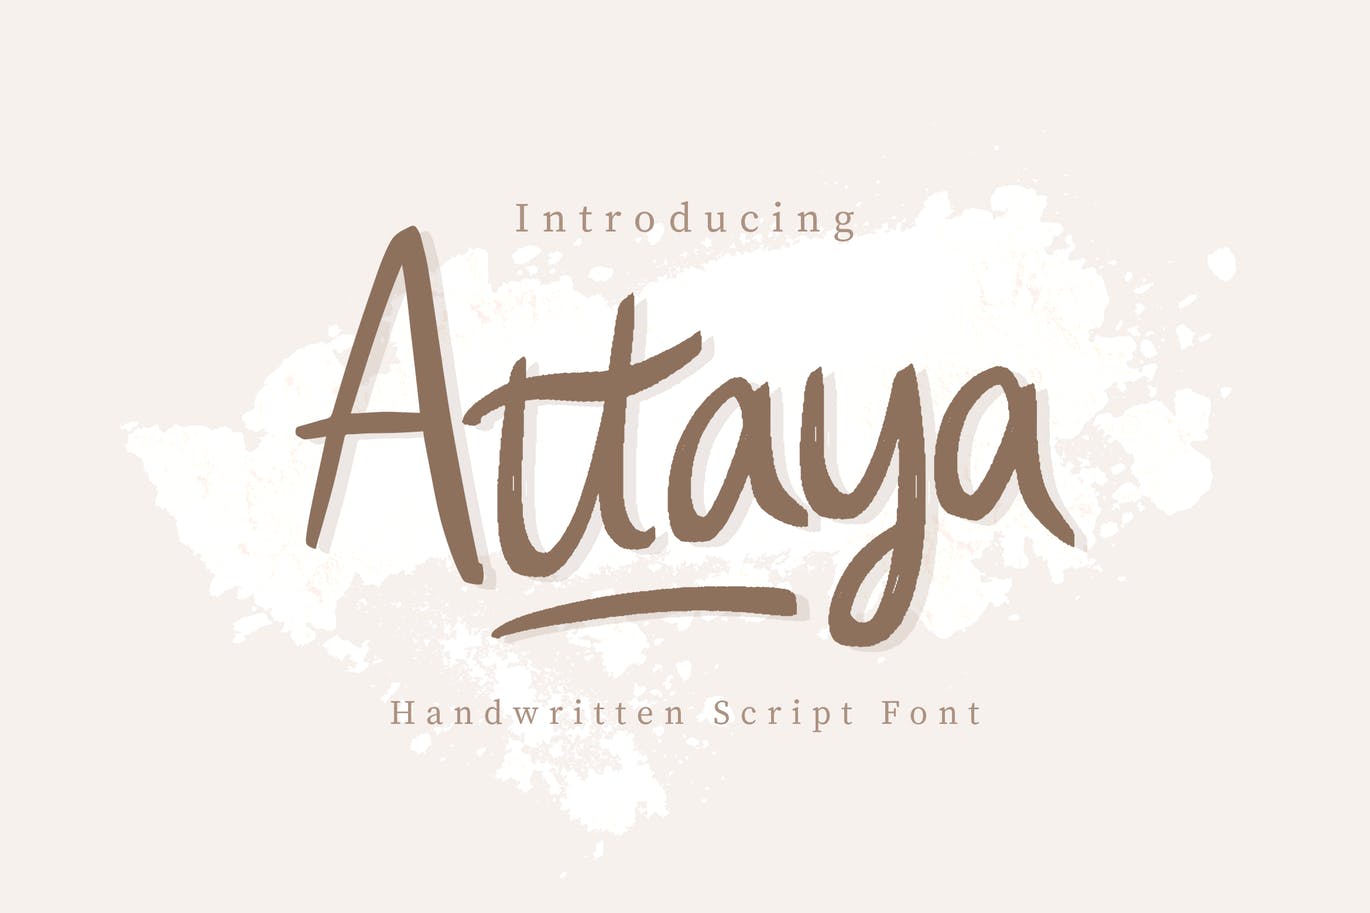 可爱有趣的英文手写印刷字体下载 Attaya Handwritten Font插图